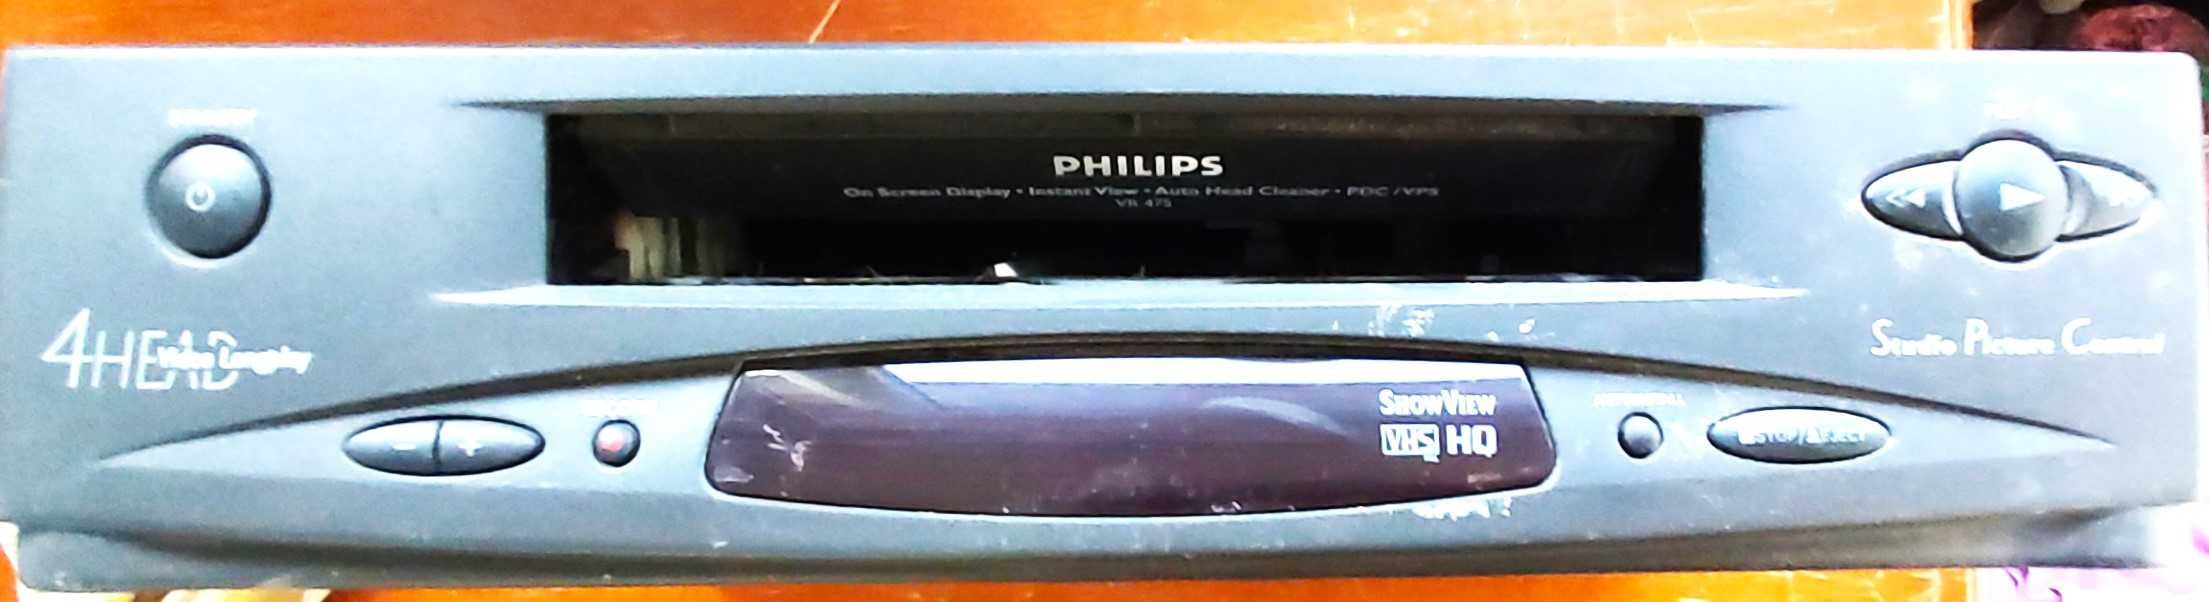 Philips VIDEO odtwarzacz i nagrywarka używane sprawne OKAZJA TRANSPORT